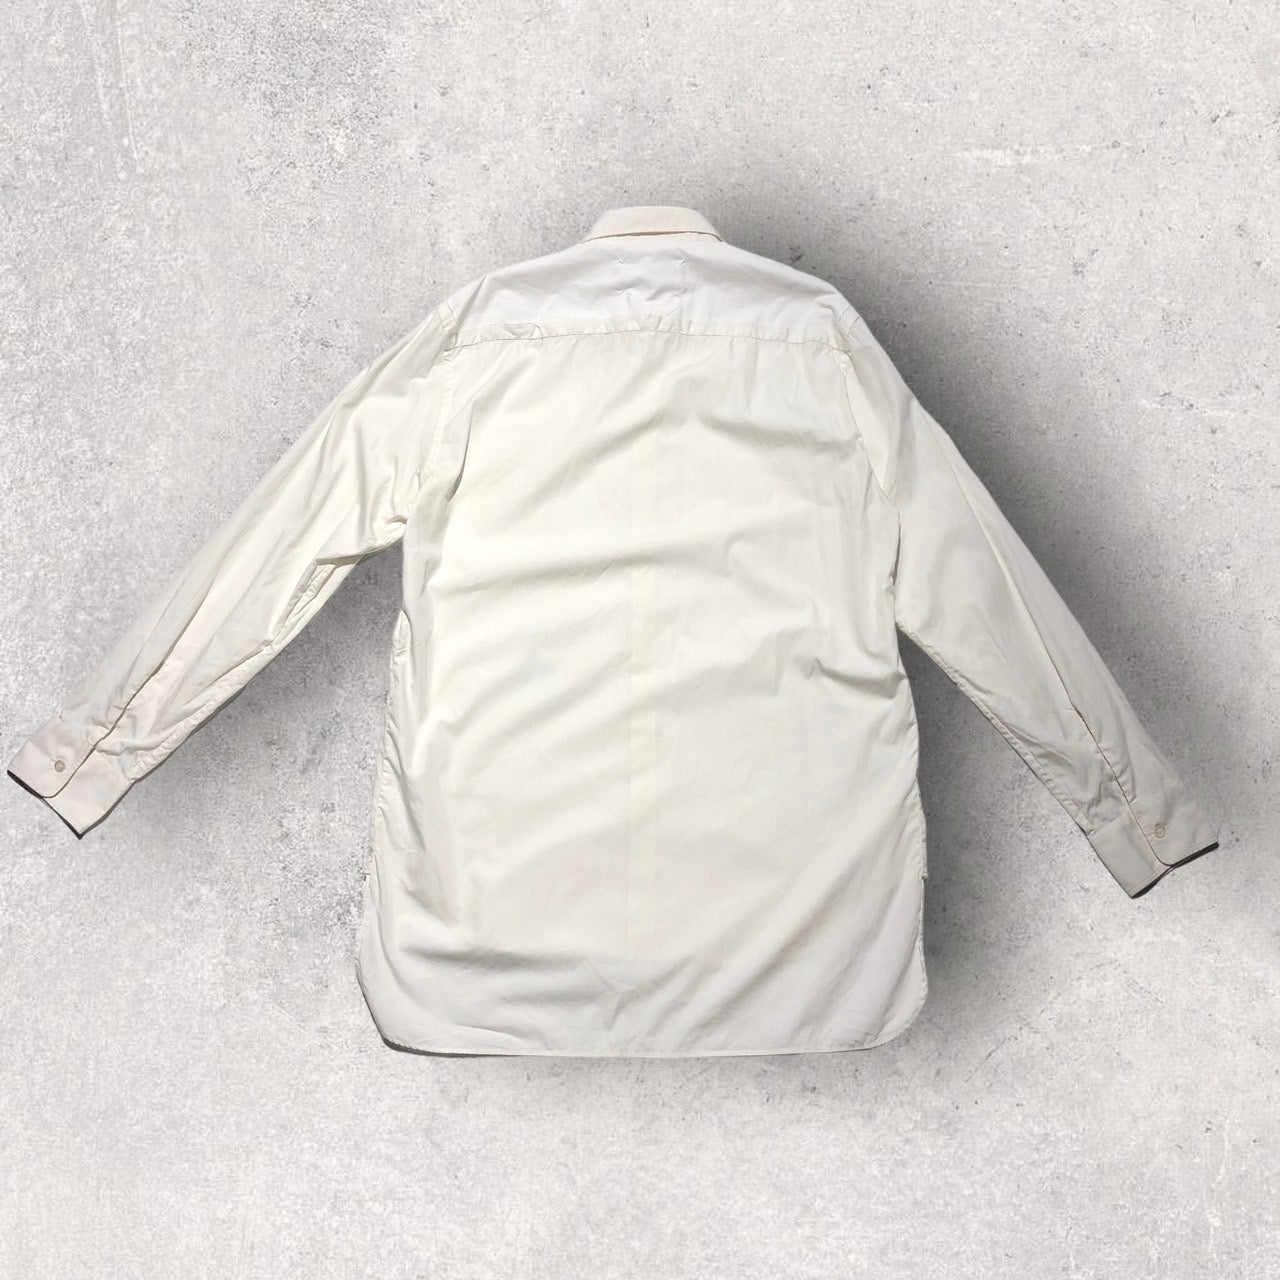 Maison Margiela(メゾンマルジェラ) 18SSカッティング加工オーバーサイズシャツ 40(Lサイズ程度) ホワイト